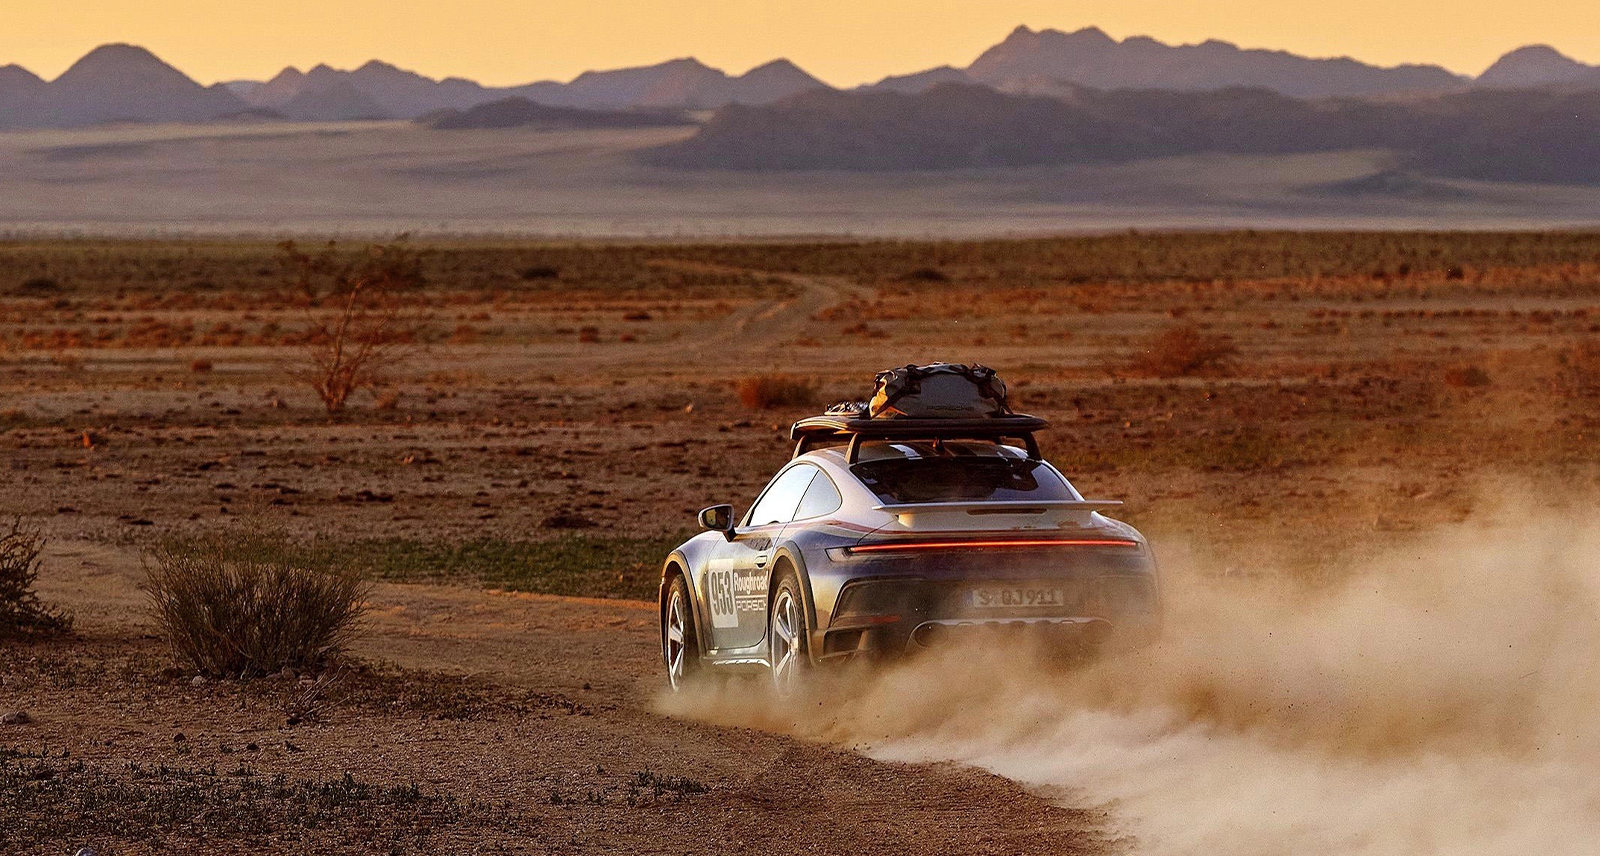 Porsche 911 Dakar Feature image driving desert